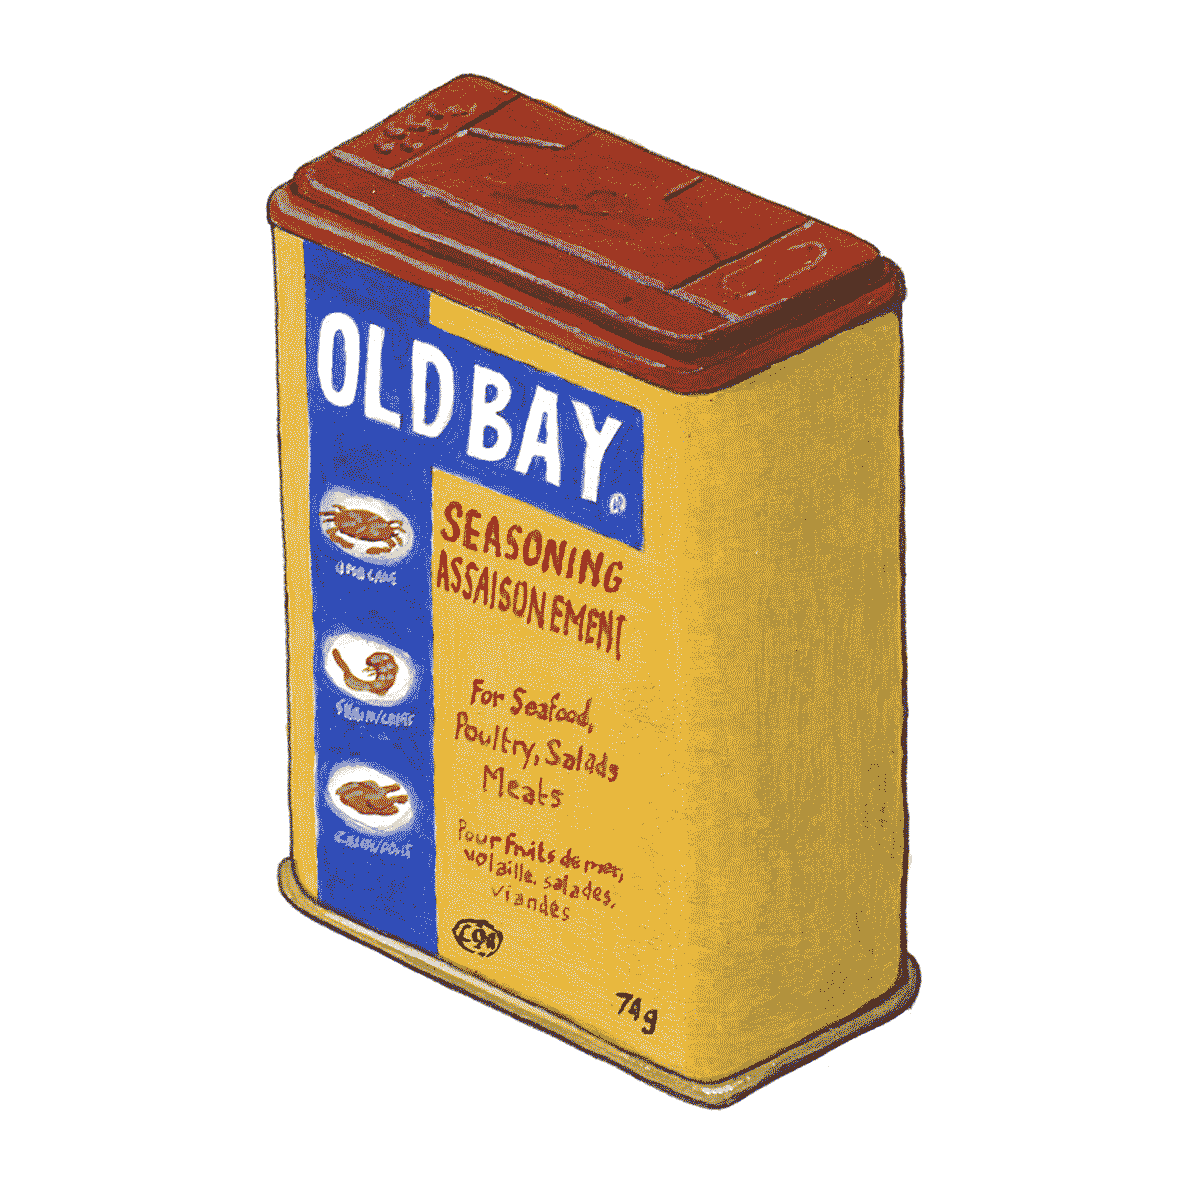 A box of Old Bay seasoning